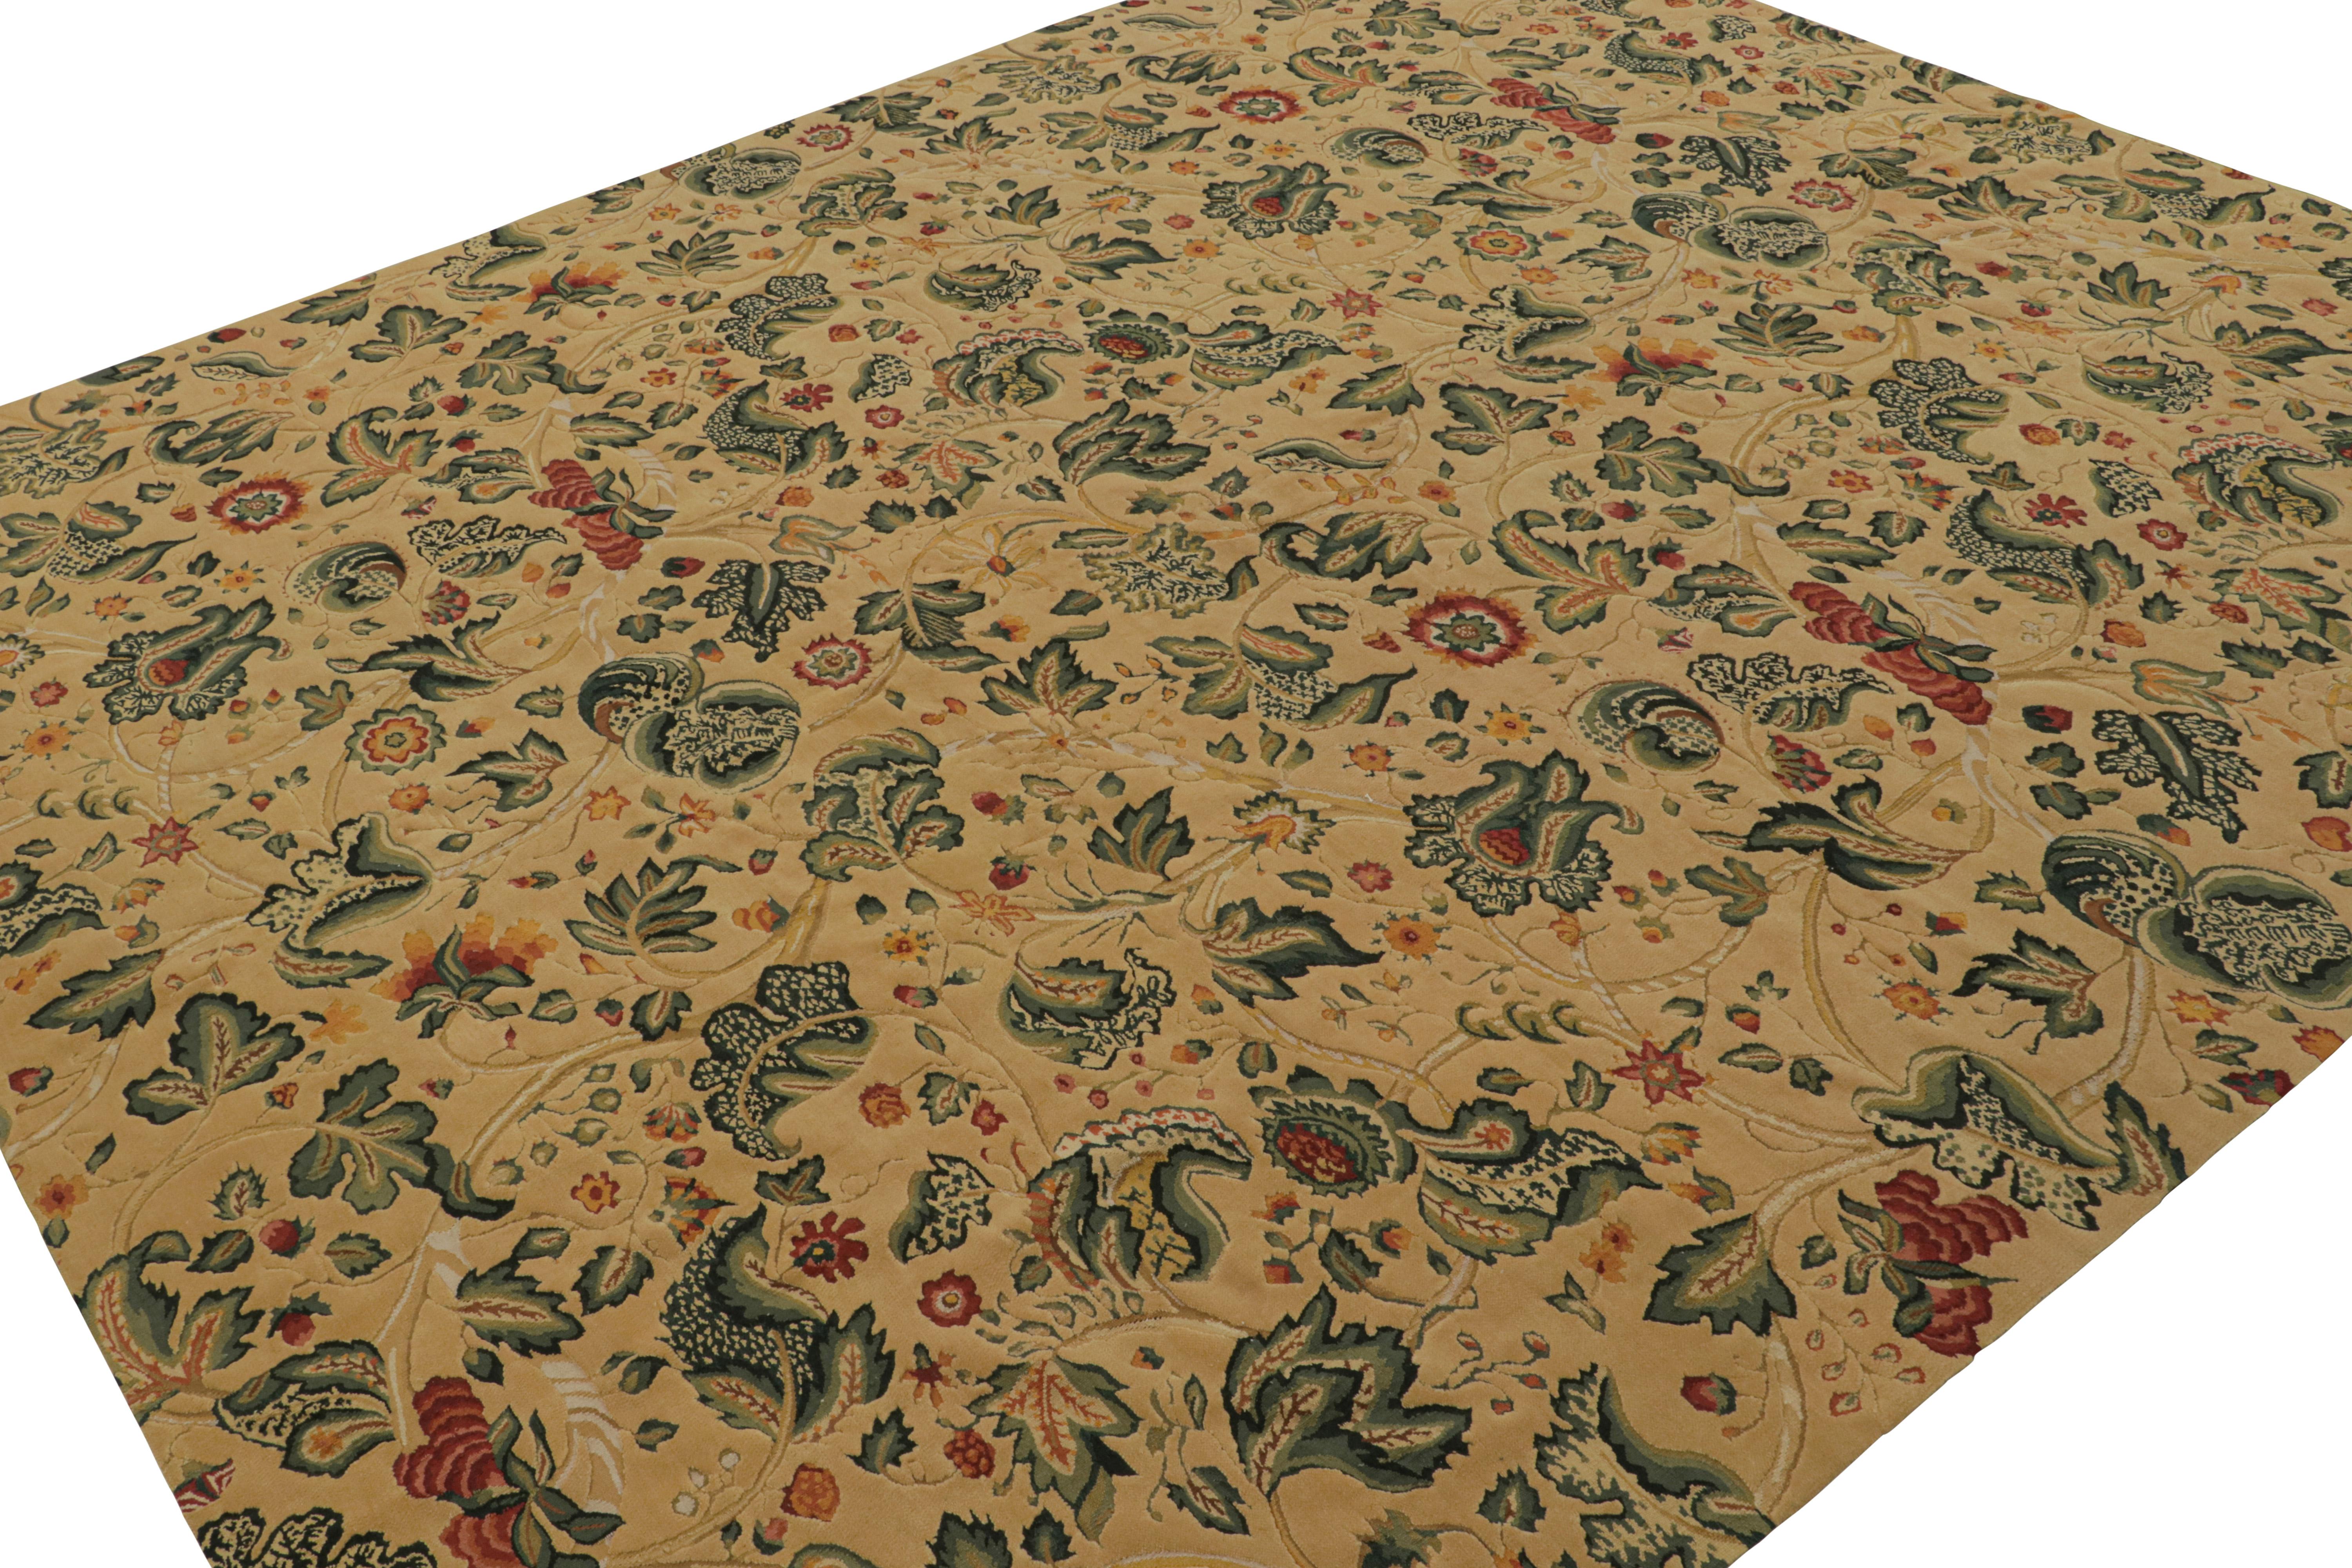 Dieser aus Wolle handgewebte europäische Flachgewebe-Teppich im Format 10x12 wurde von englischen Tudor-Teppichen und Wandteppichen des 18. Jahrhunderts inspiriert. Das Design besteht aus floralen Mustern in Grün, Rot, Gold und blaugrünen Akzenten